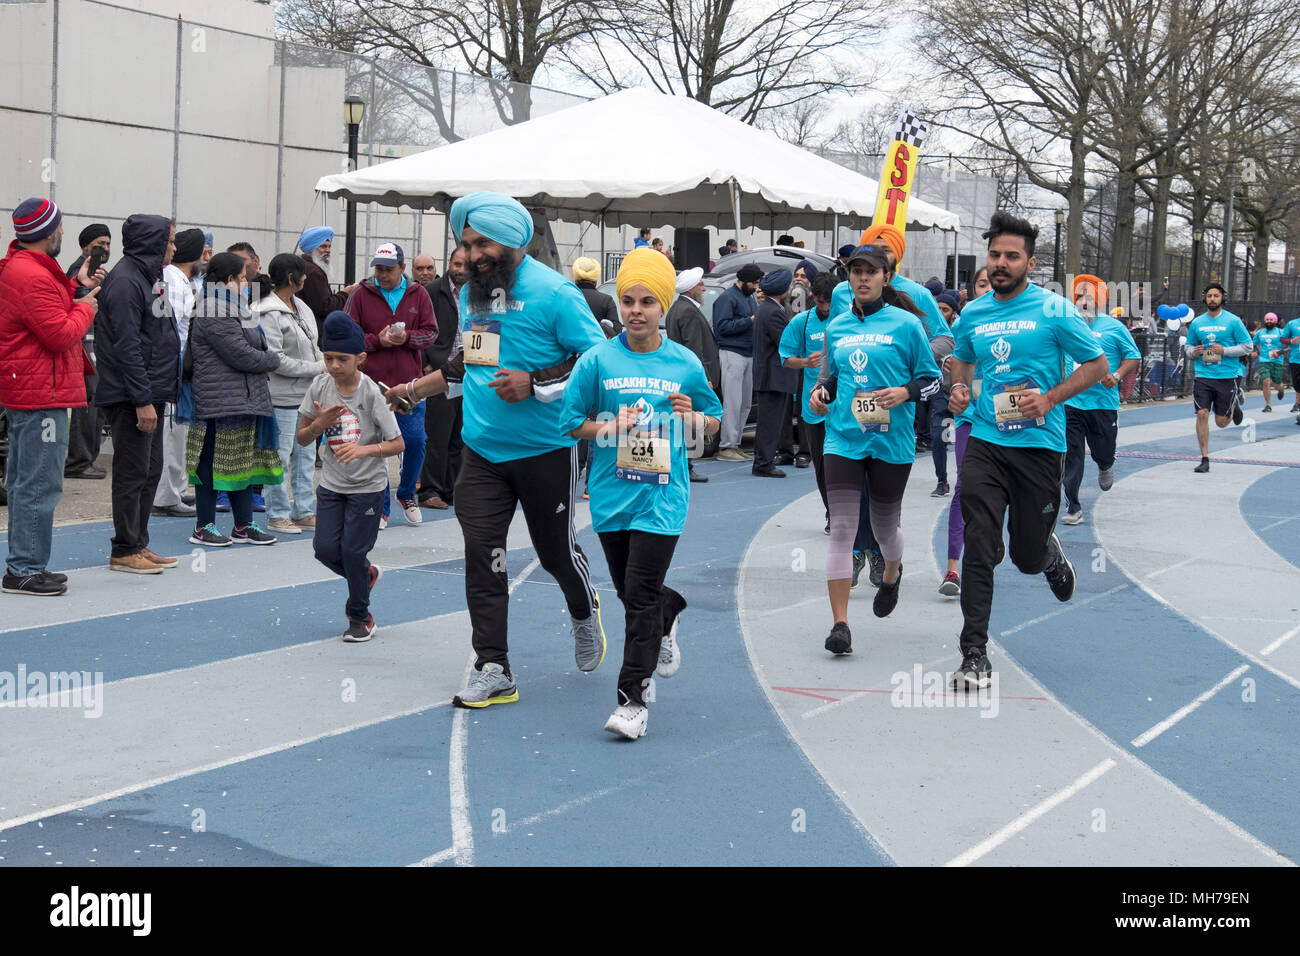 Männer, Frauen und Kinder zu Beginn des Rennens an der Vaisakhi 5k laufen in VIctory Field, Woodhaven, Queens, New York. Stockfoto